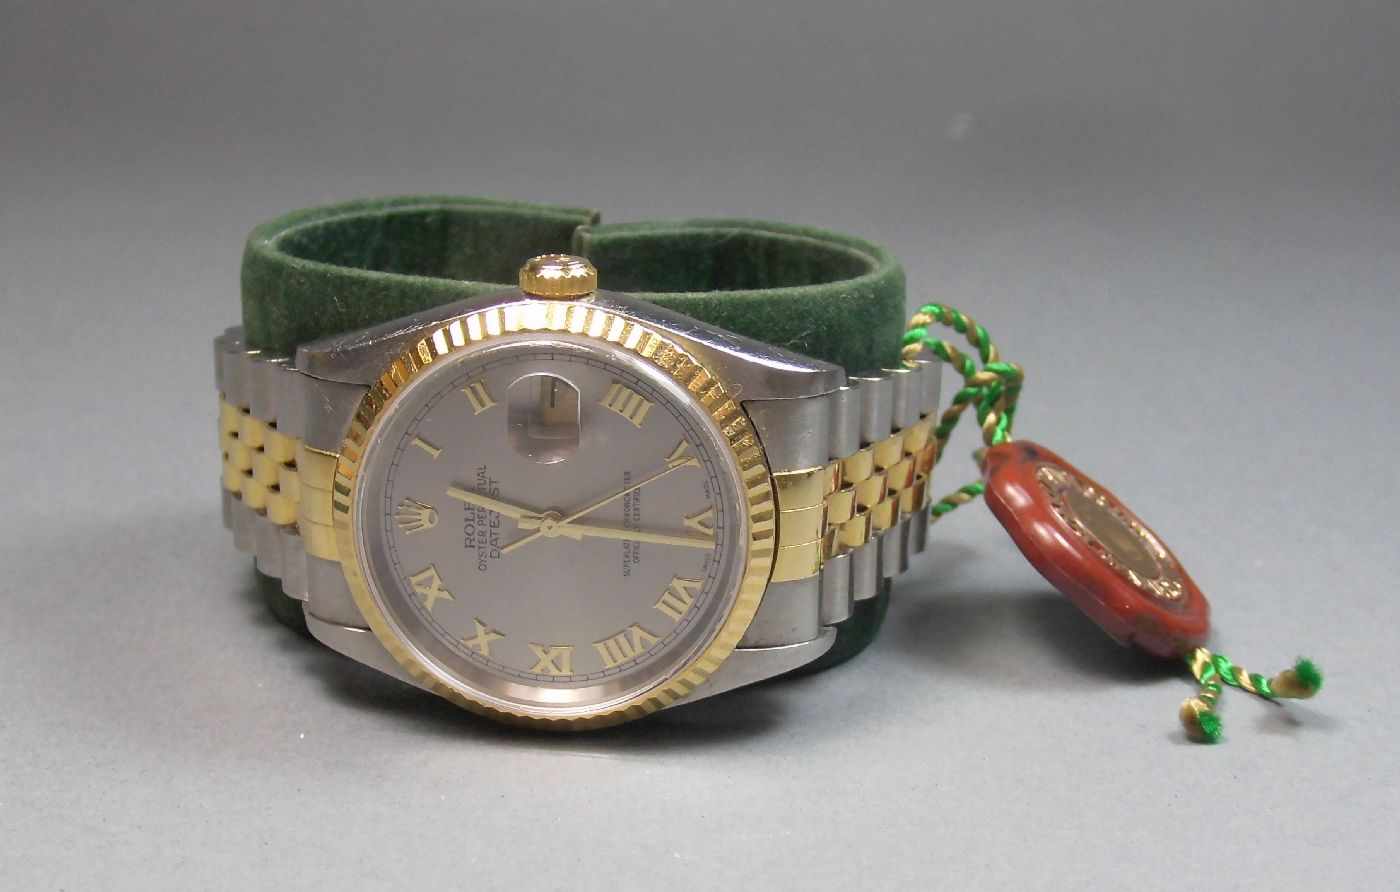 ROLEX OYSTER PERPETUAL DATEJUST - HERRENARMBANDUHR / wristwatch, Uhr und Band Stahl und 18 kt. - Image 2 of 6